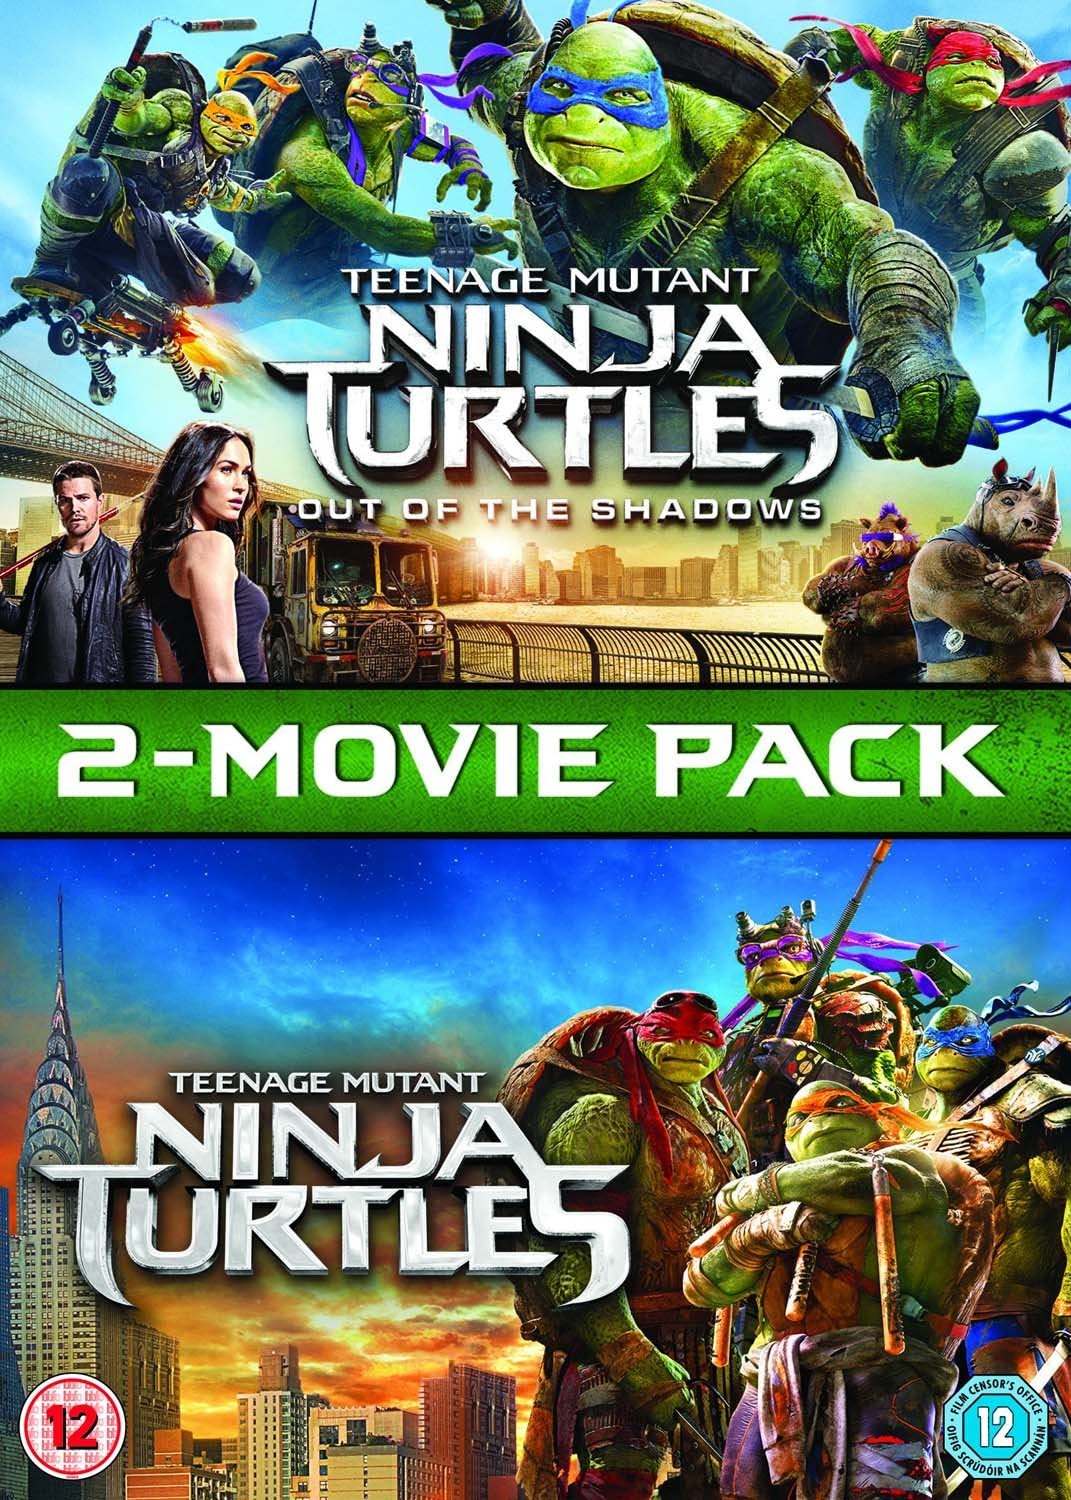 Teenage Mutant Ninja Turtles / Teenage Mutant Ninja Turtles: Out Of The Shadows [2017] - Action/Adventure [DVD]